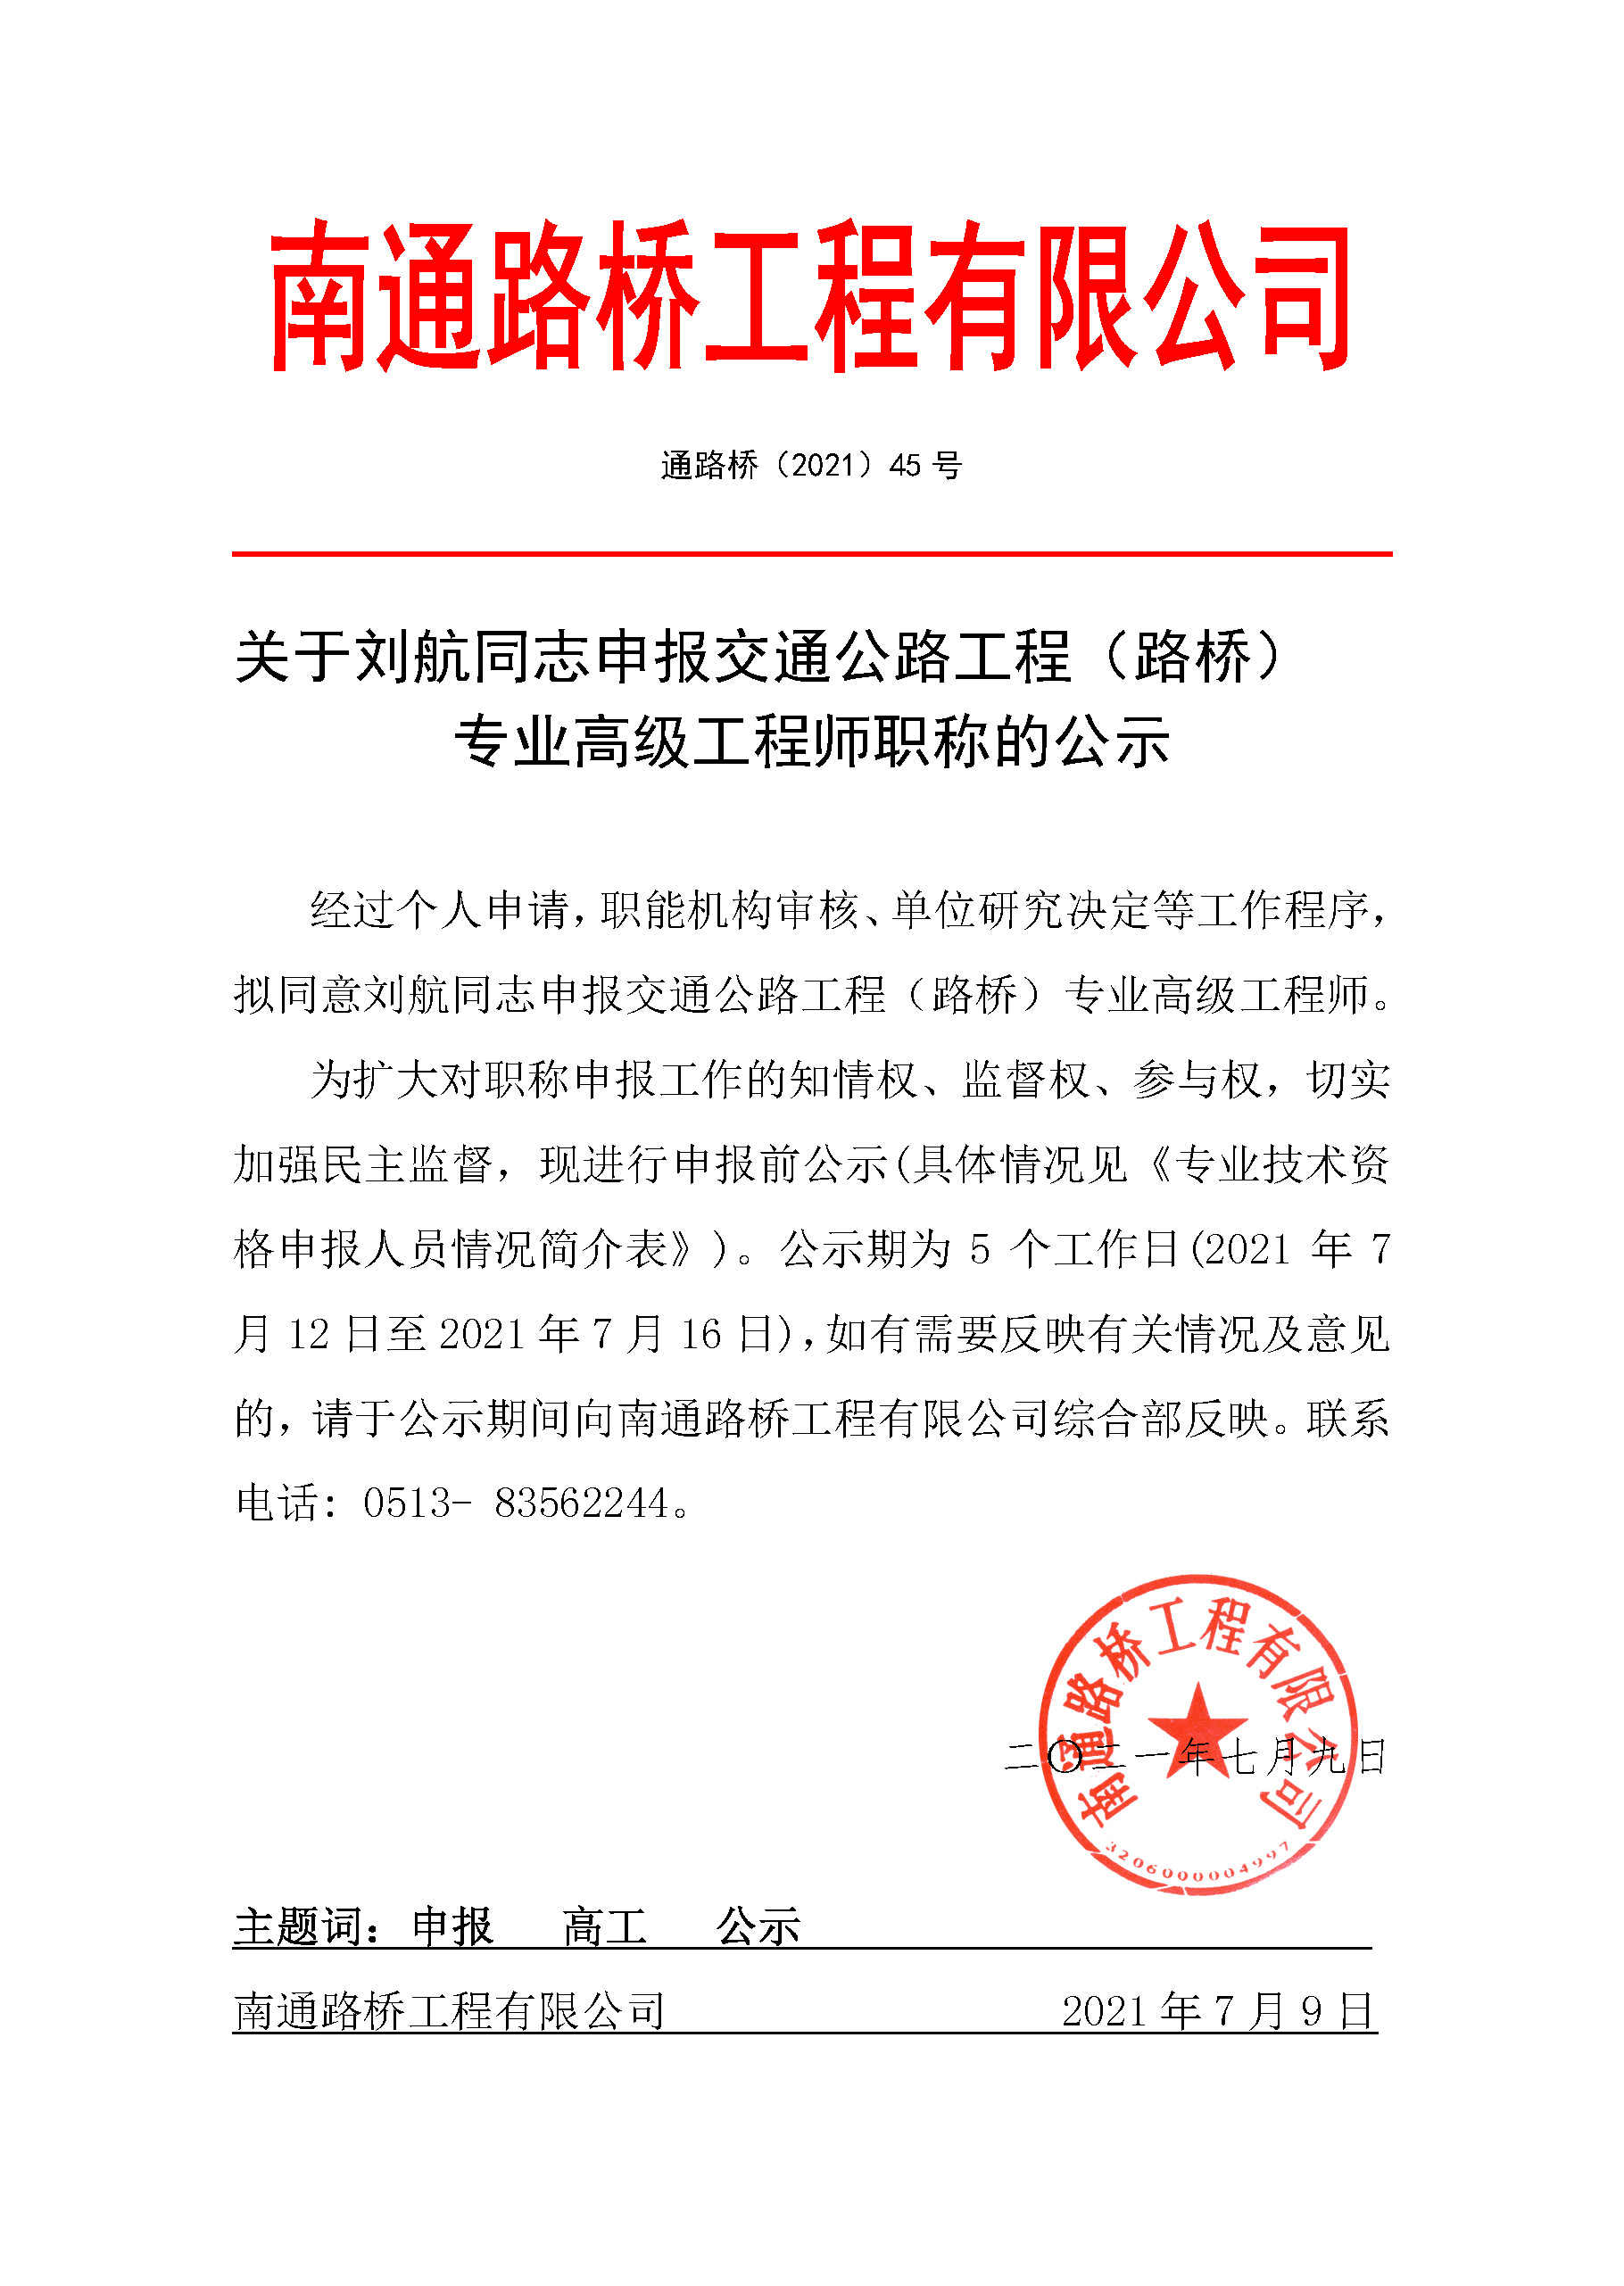 关于刘航同志申报交通公路工程（路桥） 专业高级工程师职称的公示 经